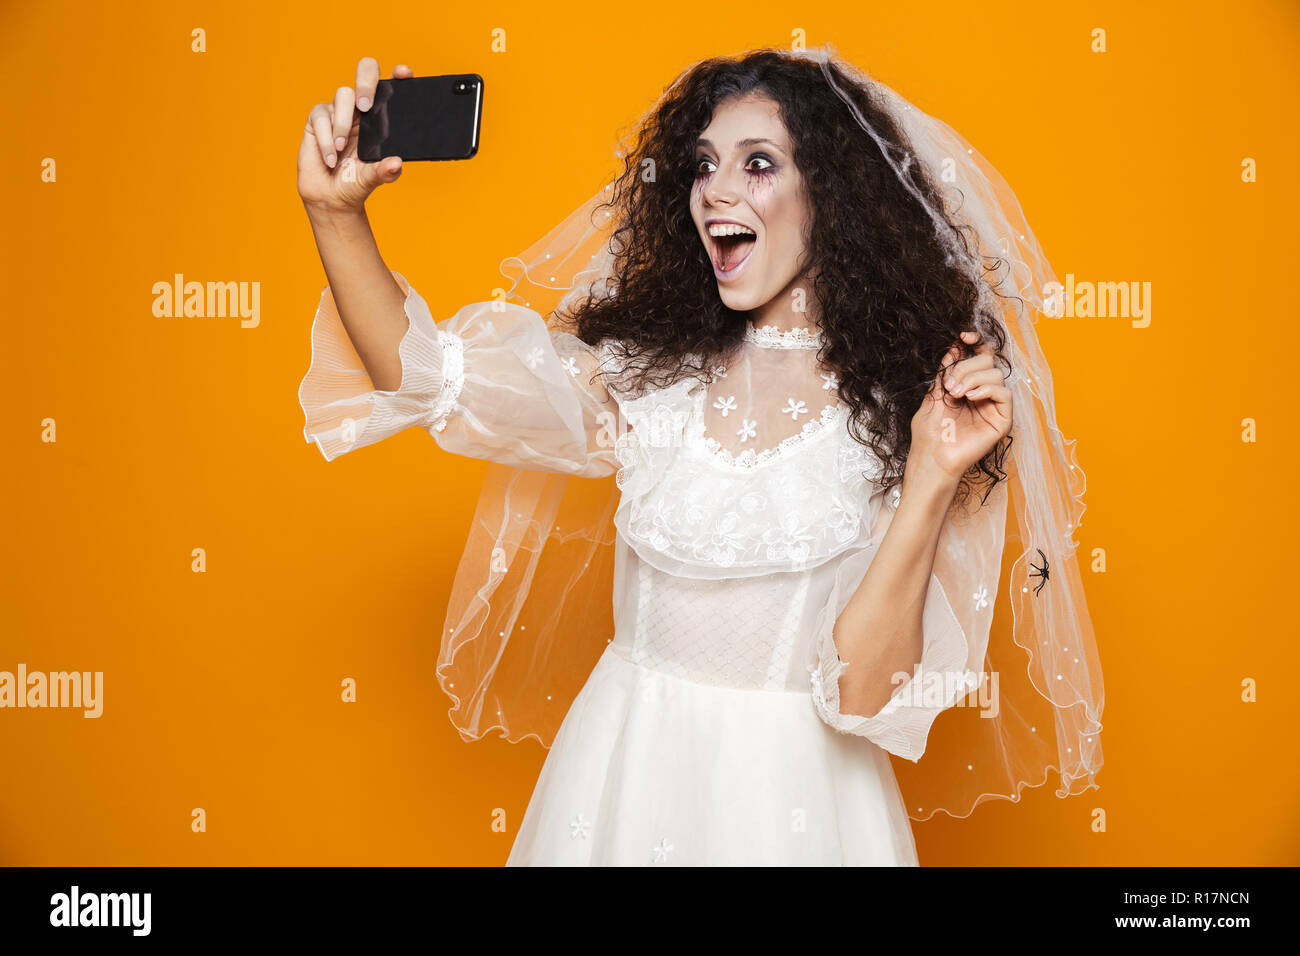 Bild der erschreckenden Braut Zombie auf Halloween Hochzeit Kleid tragen und beängstigend Make-up unter selfie am Handy über Gelb Hintergrund isoliert Stockfoto